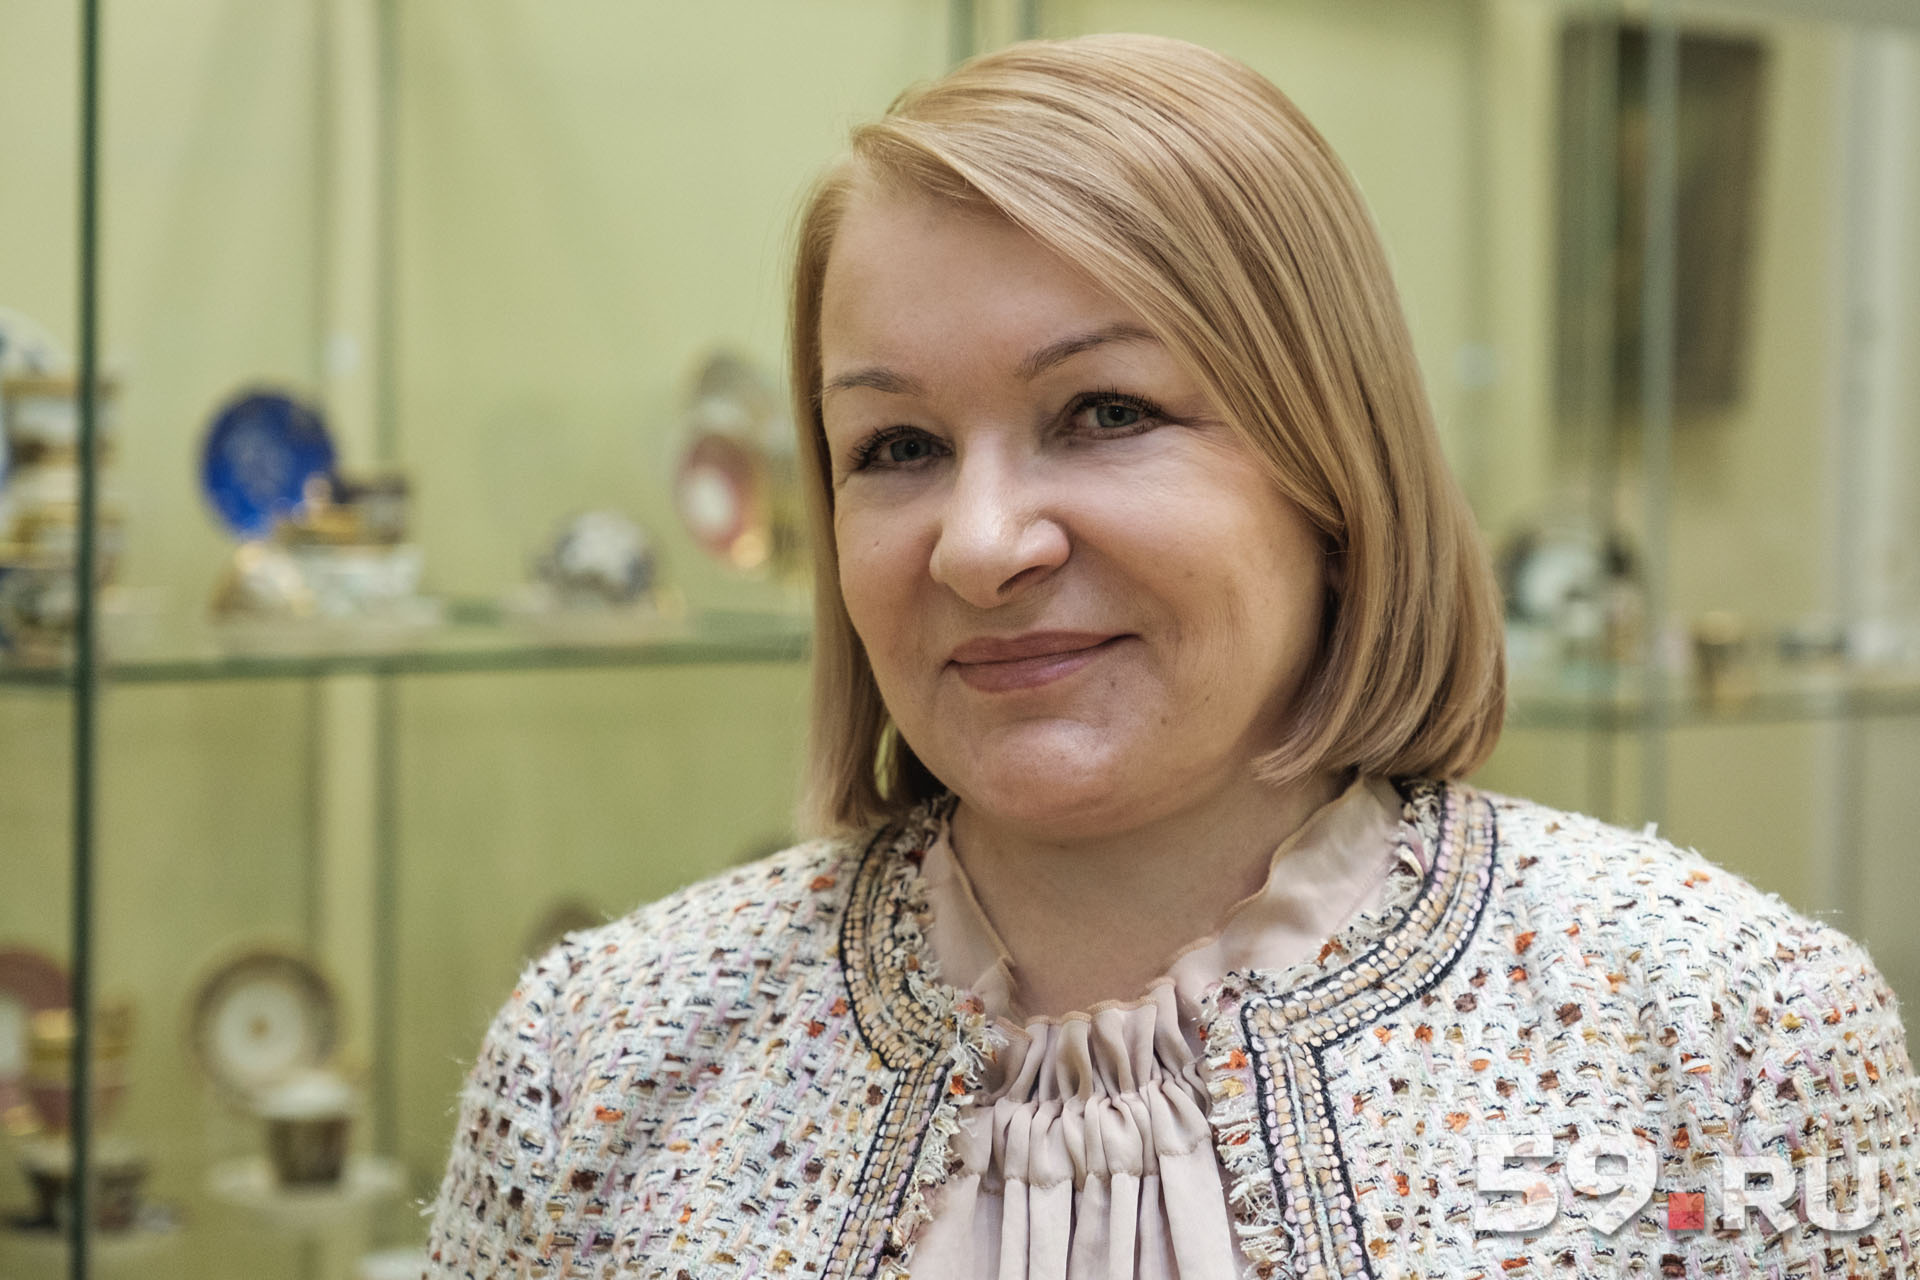 Галина Куранова коллекционирует чашки, произведенные на российских заводах до 1917 года